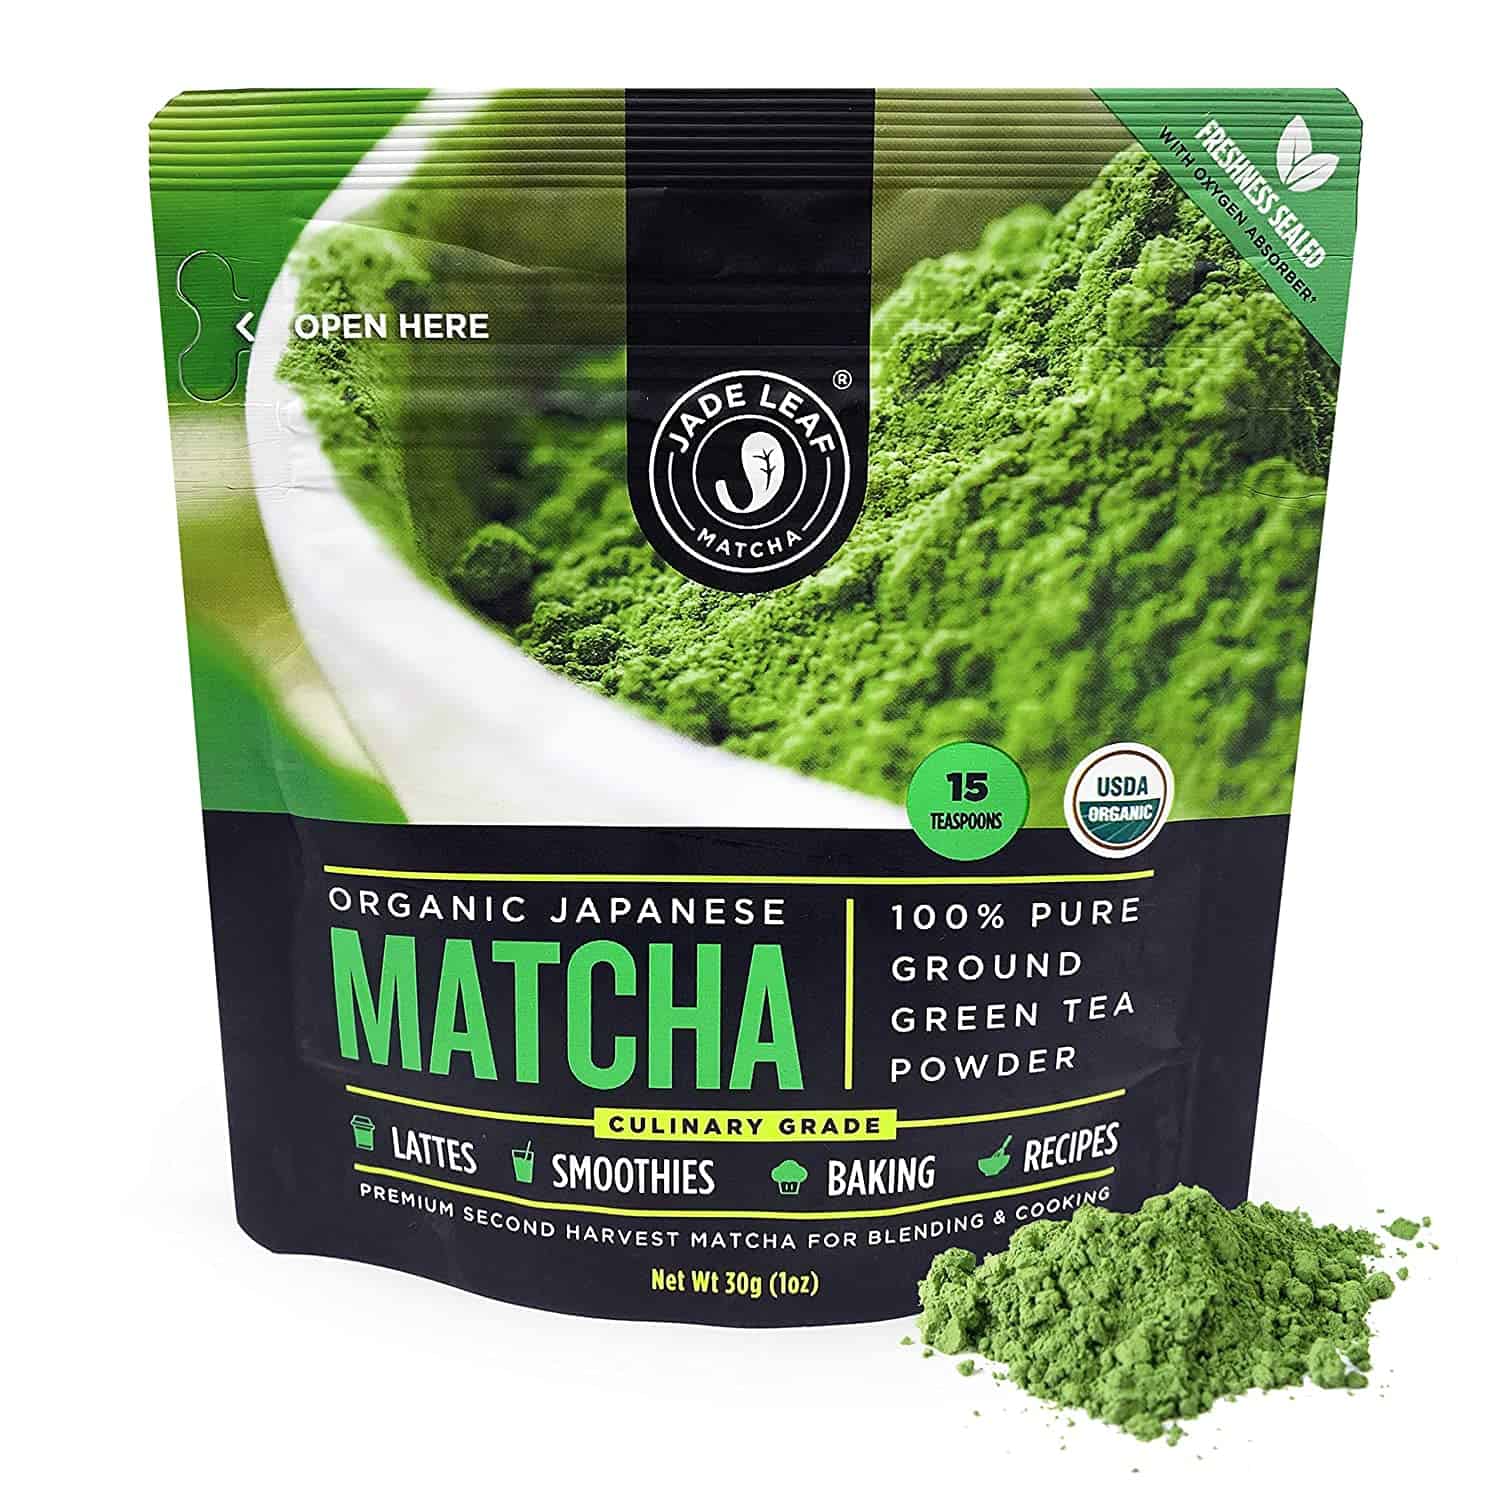 Organic matcha powder